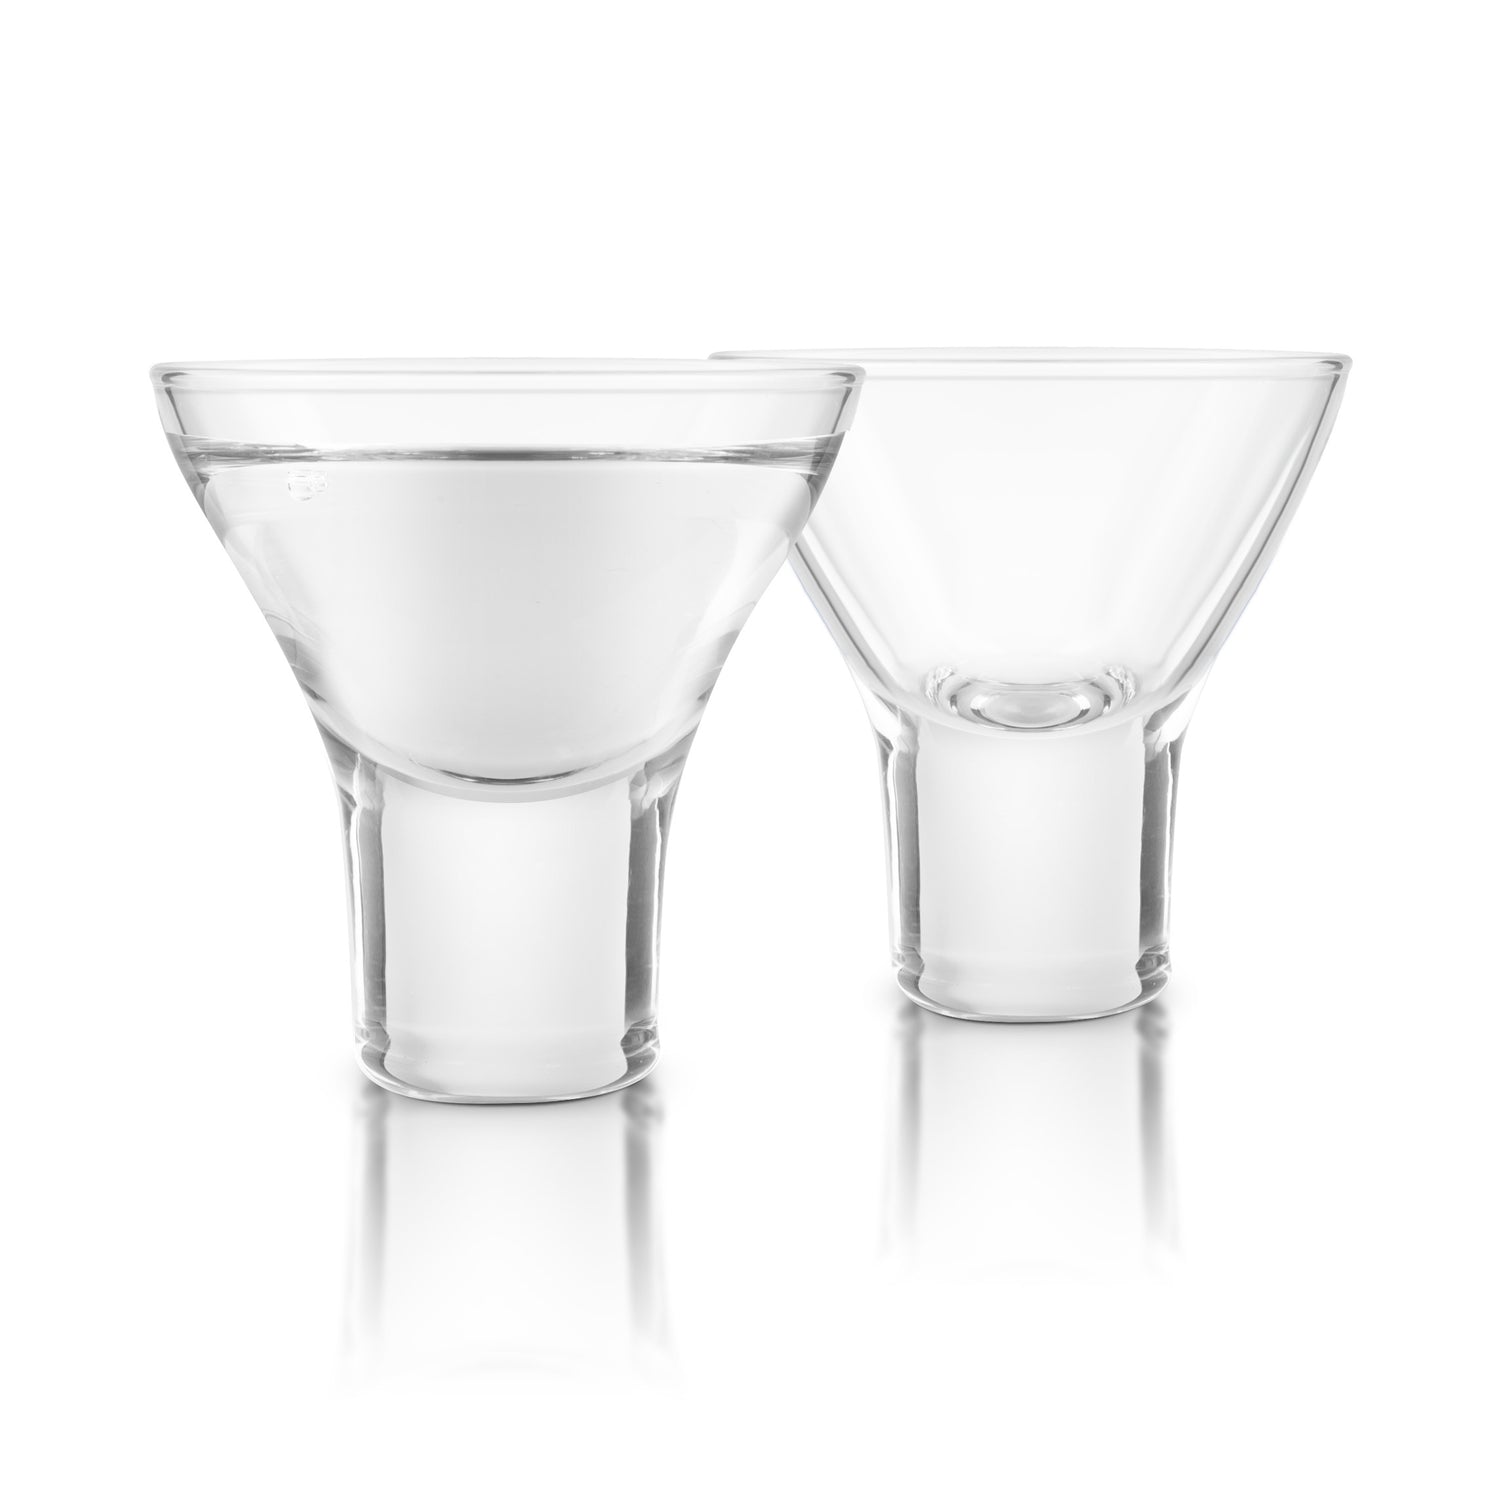 Sake Lead-Free Crystal Glasses - Set of 2